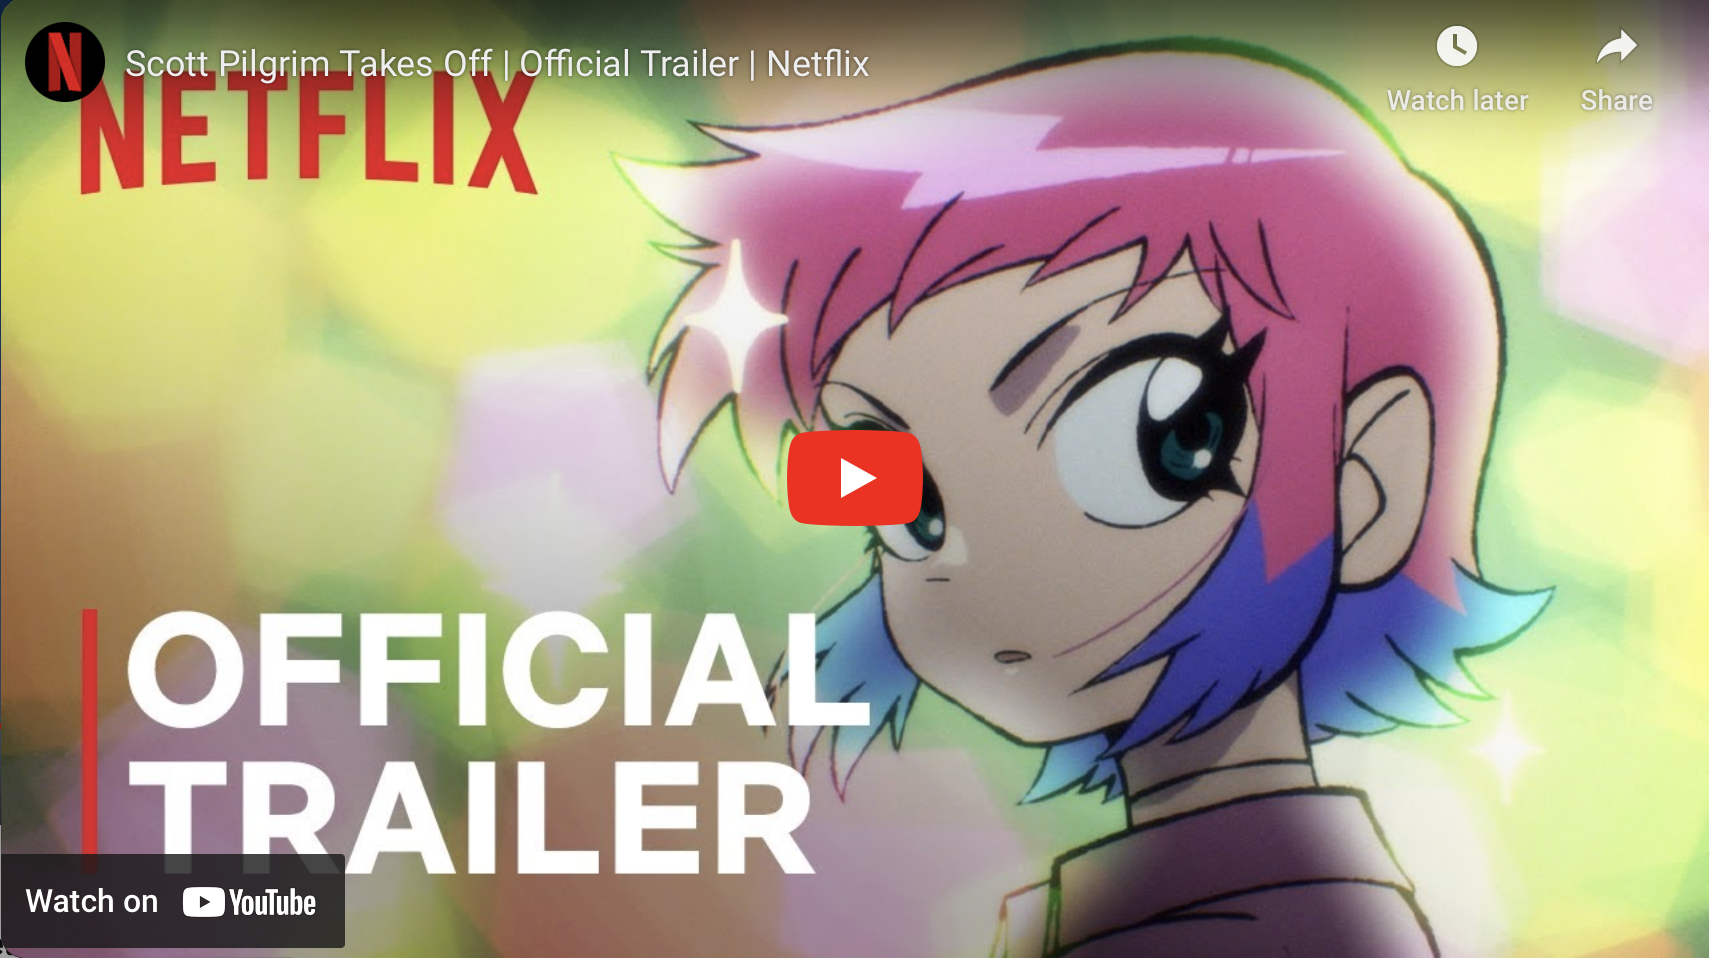 Watch Netflix's 'Cyberpunk 2077' anime series trailer